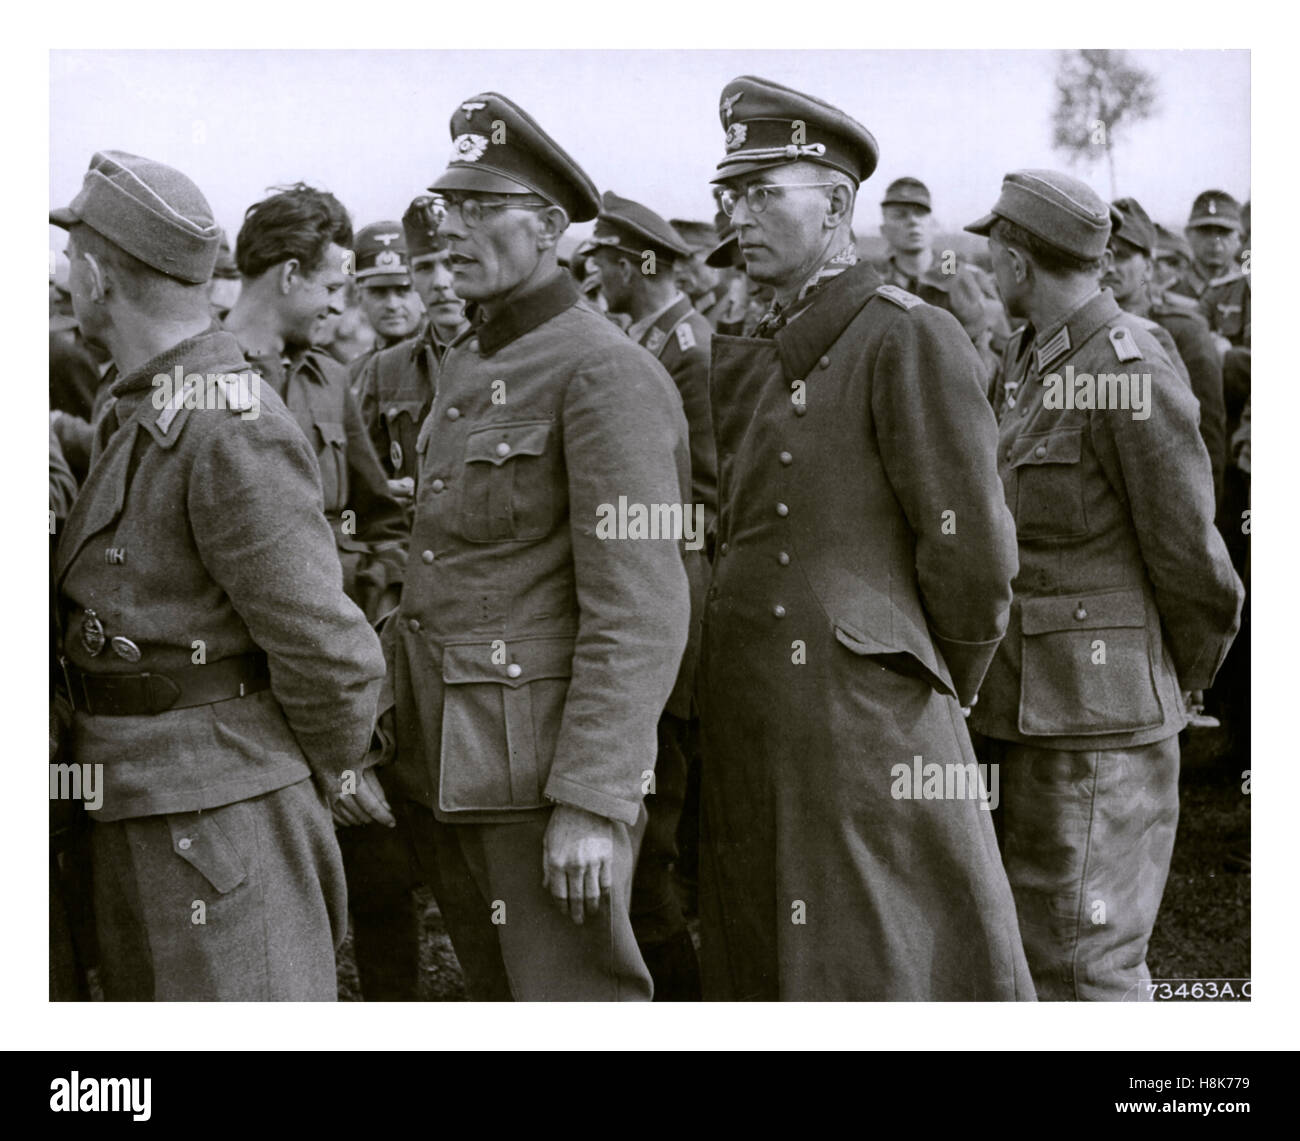 Prigionieri di guerra tedeschi della seconda guerra mondiale, Wehrmacht e uomini arruolati in uniforme raggruppati insieme Foto Stock